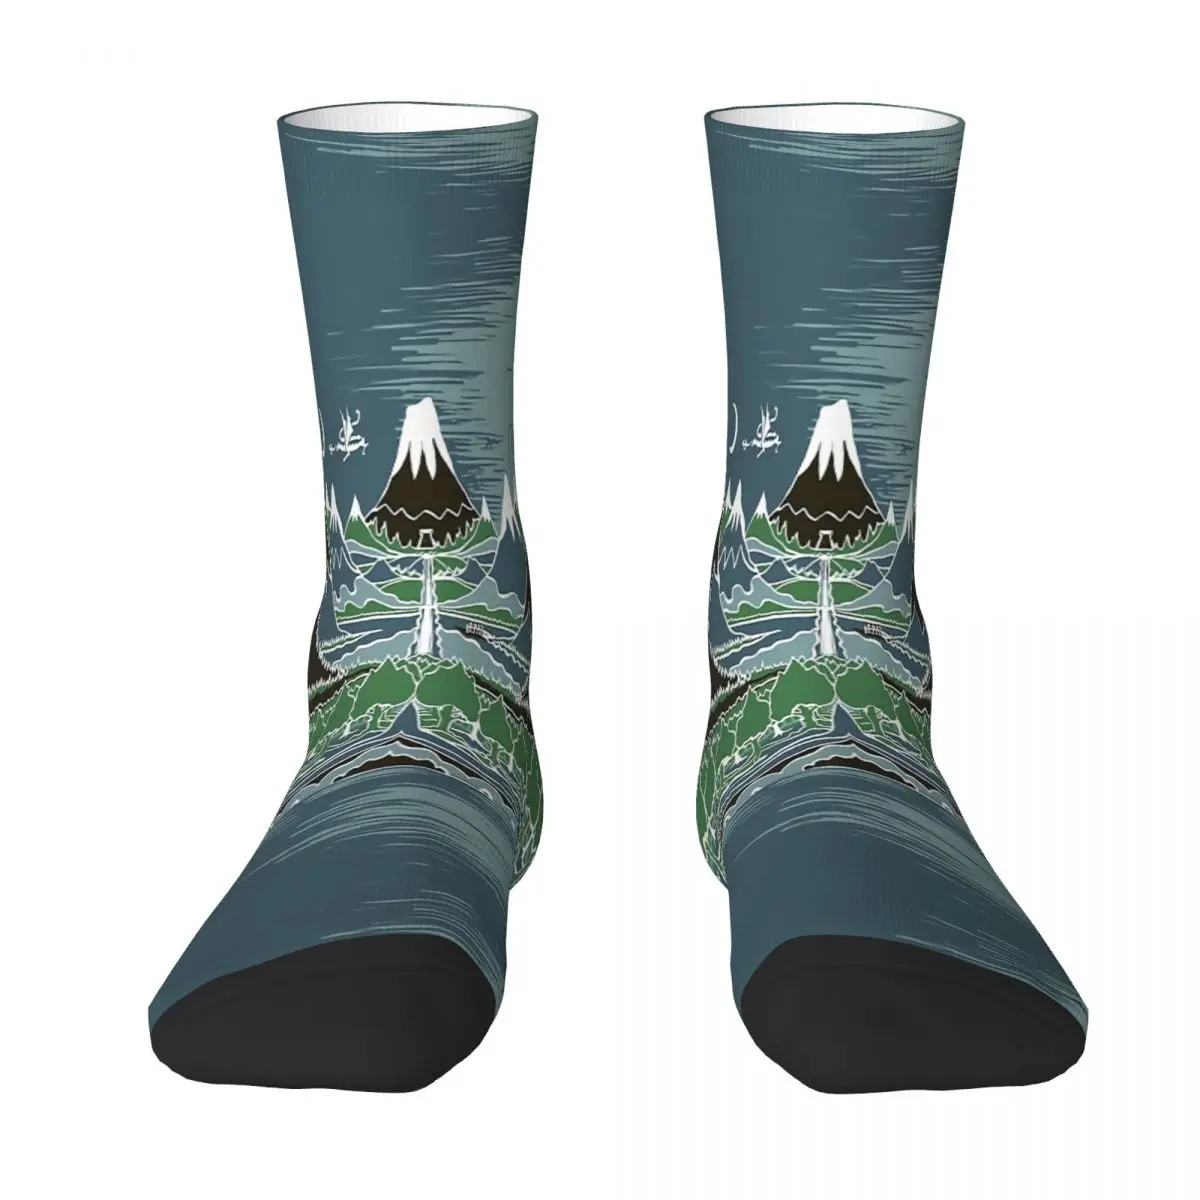 Në Mesnatë Pyjeve Malore Rrugën Në Stilin E J R R Tolkien Goditje Çorape Burra Gra Poliestër Stockings Përshtatshëm Sweetshirt . ' - ' . 0